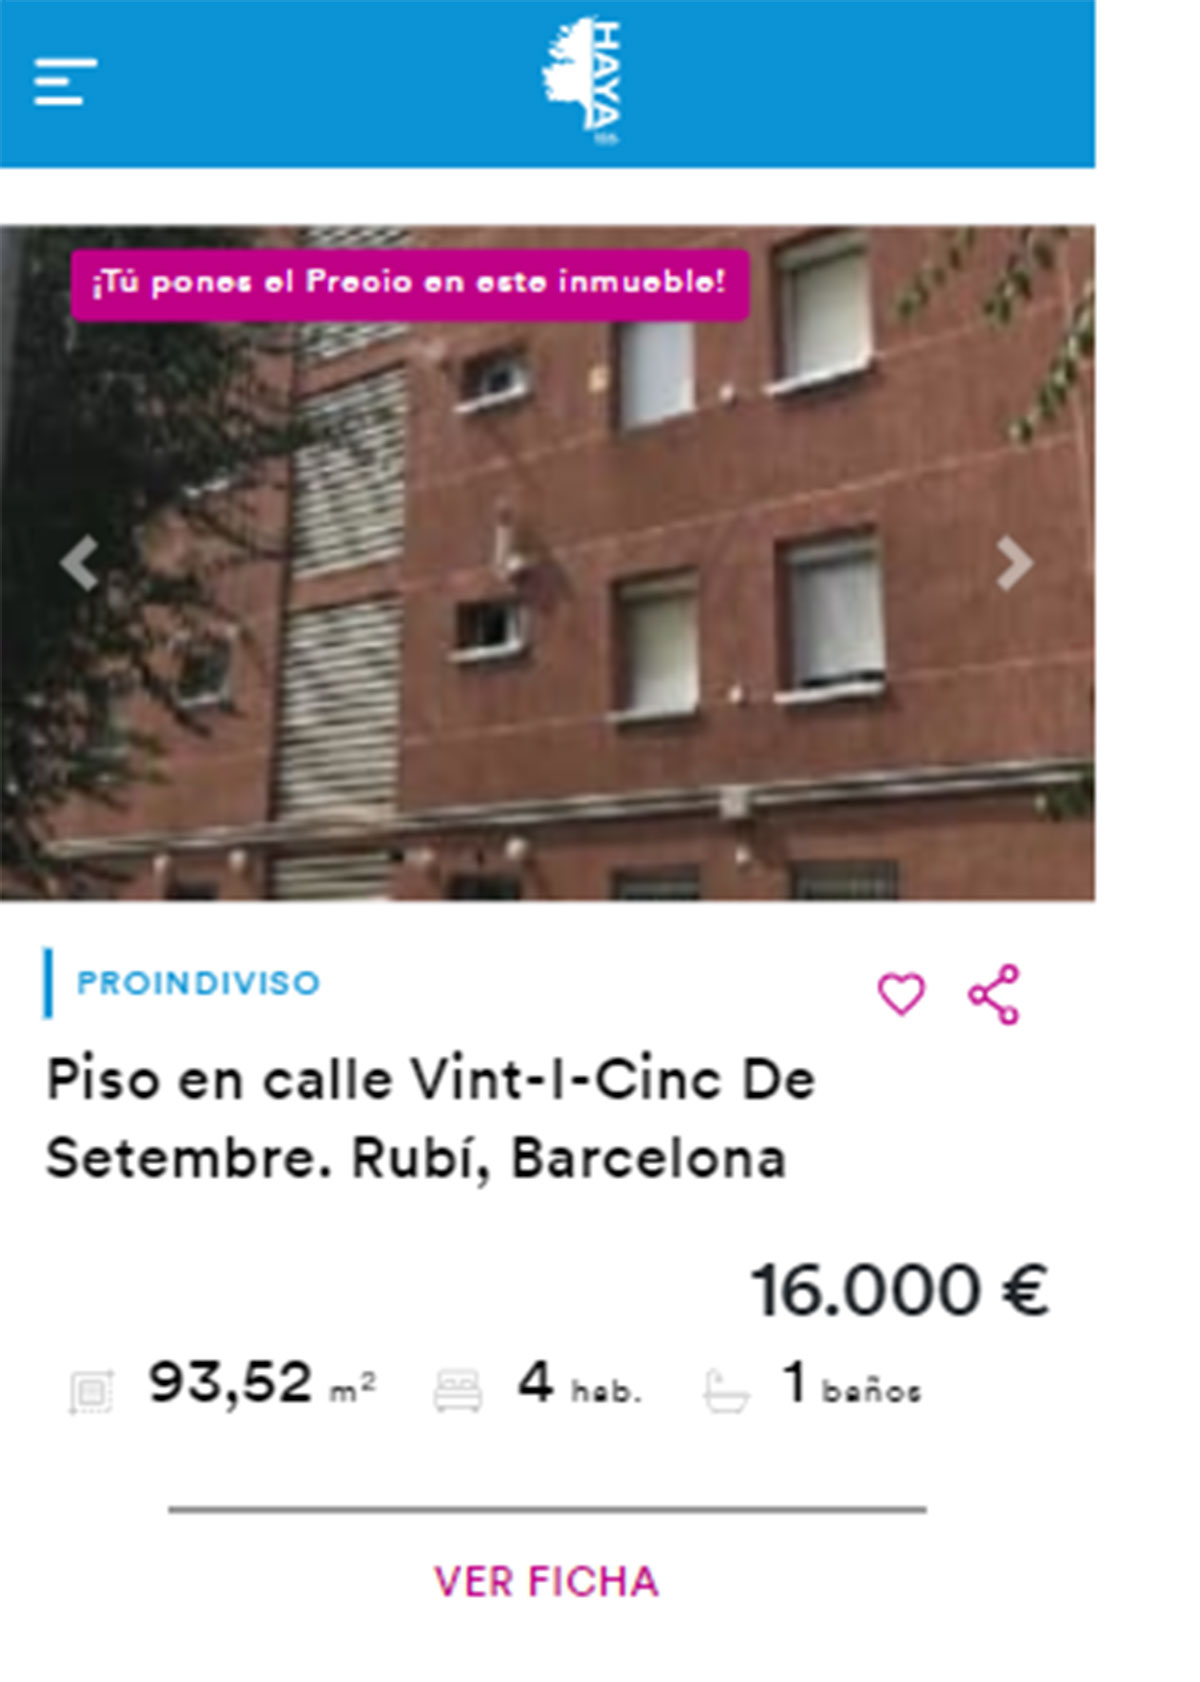 Piso en Barcelona por 16.000 euros